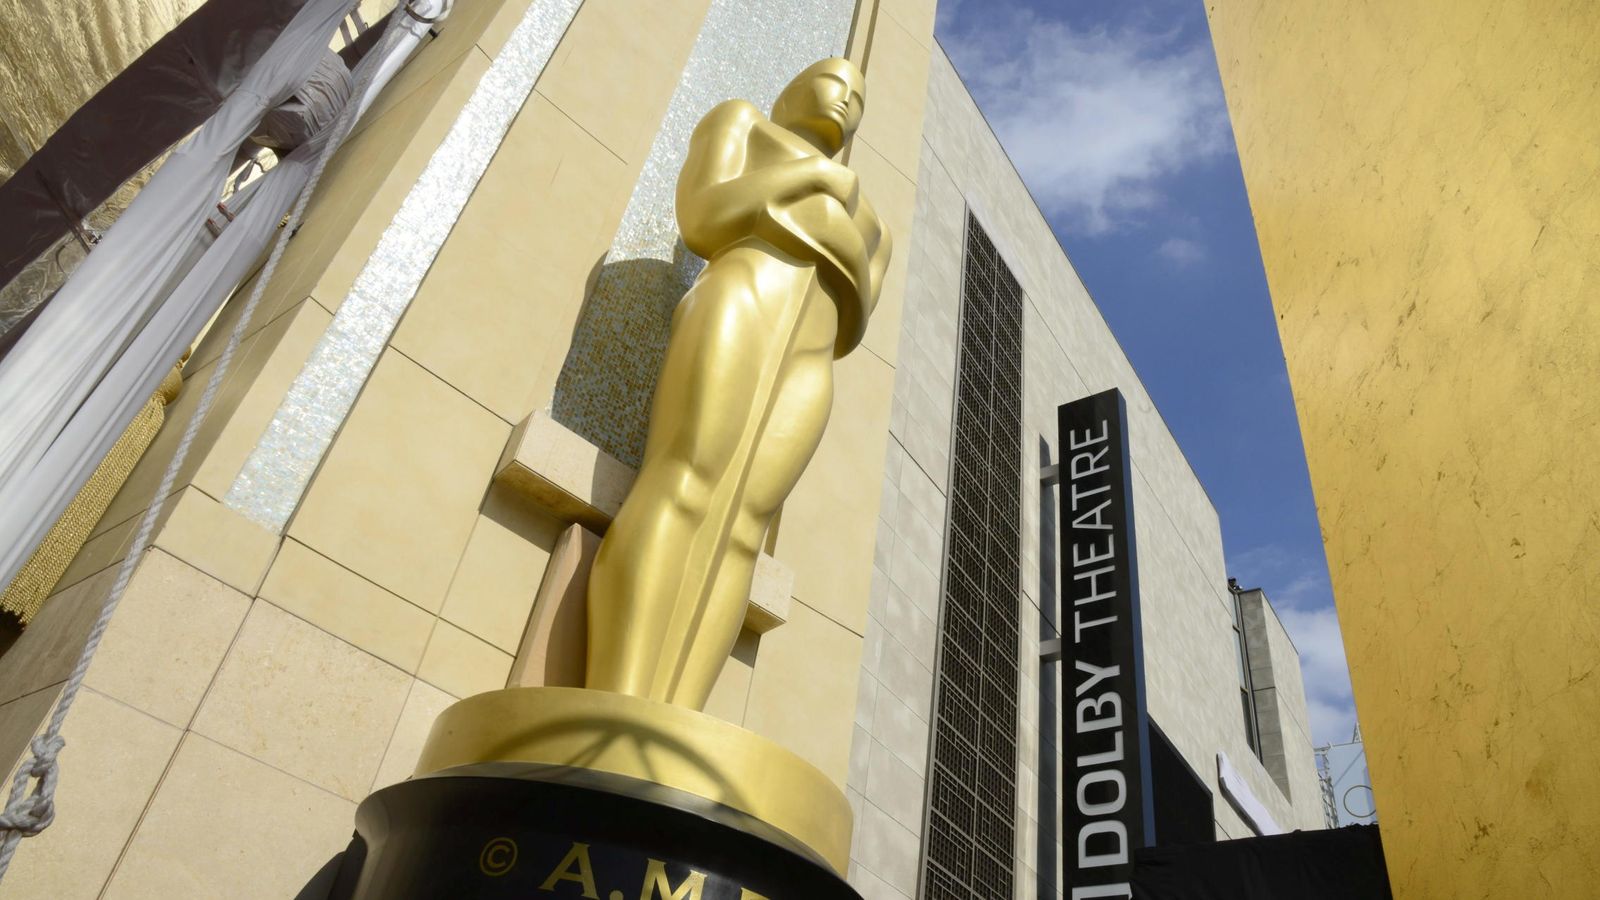 Foto: Un Oscar gigante a las puertas del Dolby Theatre. (Efe)